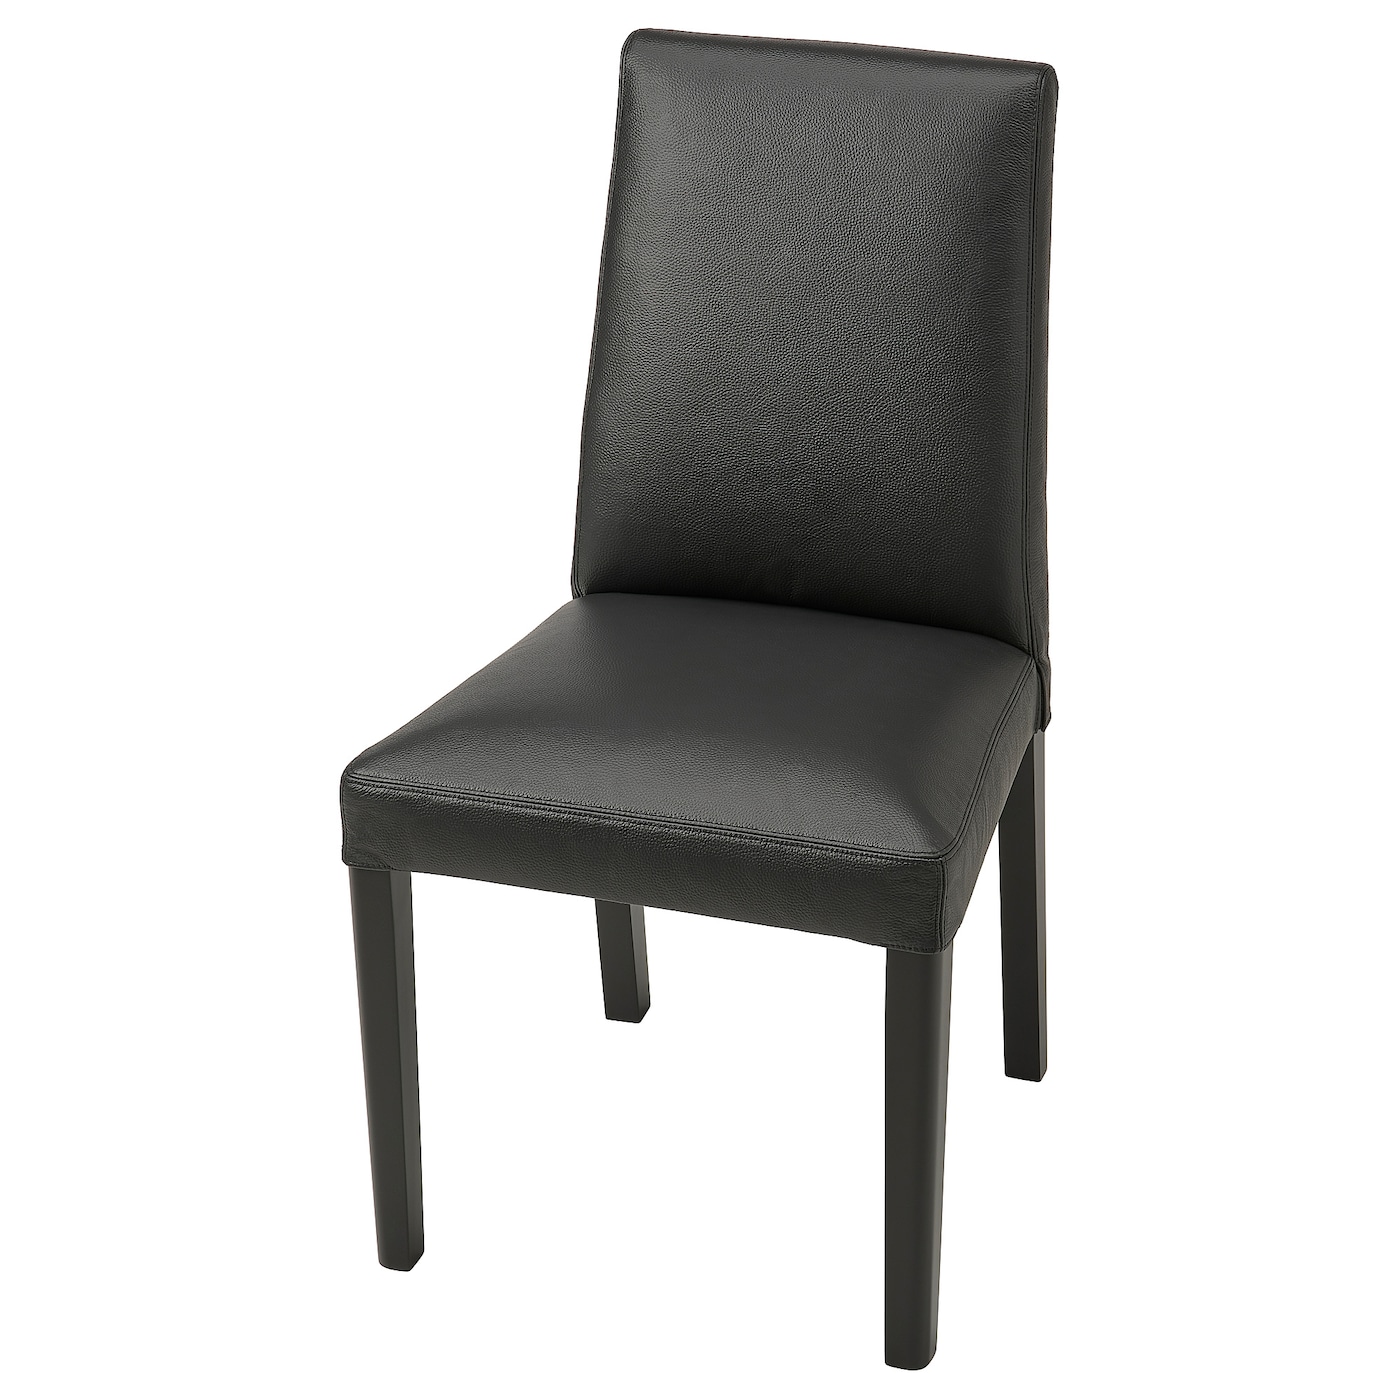 BERGMUND Stuhl  -  - Möbel Ideen für dein Zuhause von Home Trends. Möbel Trends von Social Media Influencer für dein Skandi Zuhause.